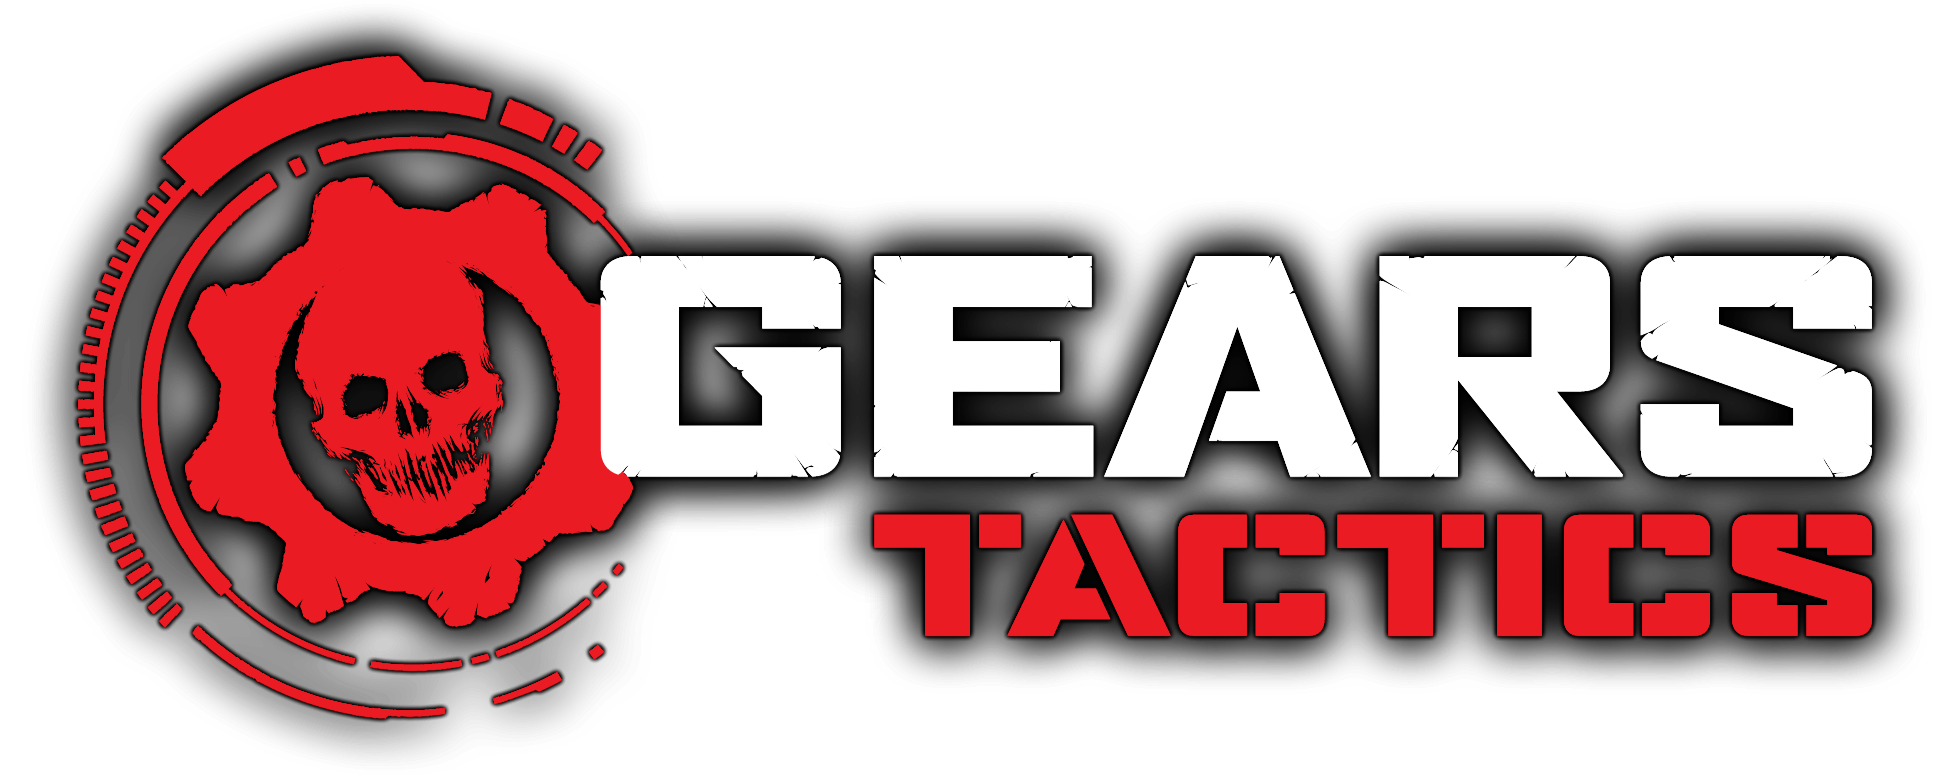 Gears of War 4's Full Achievement List Detailed